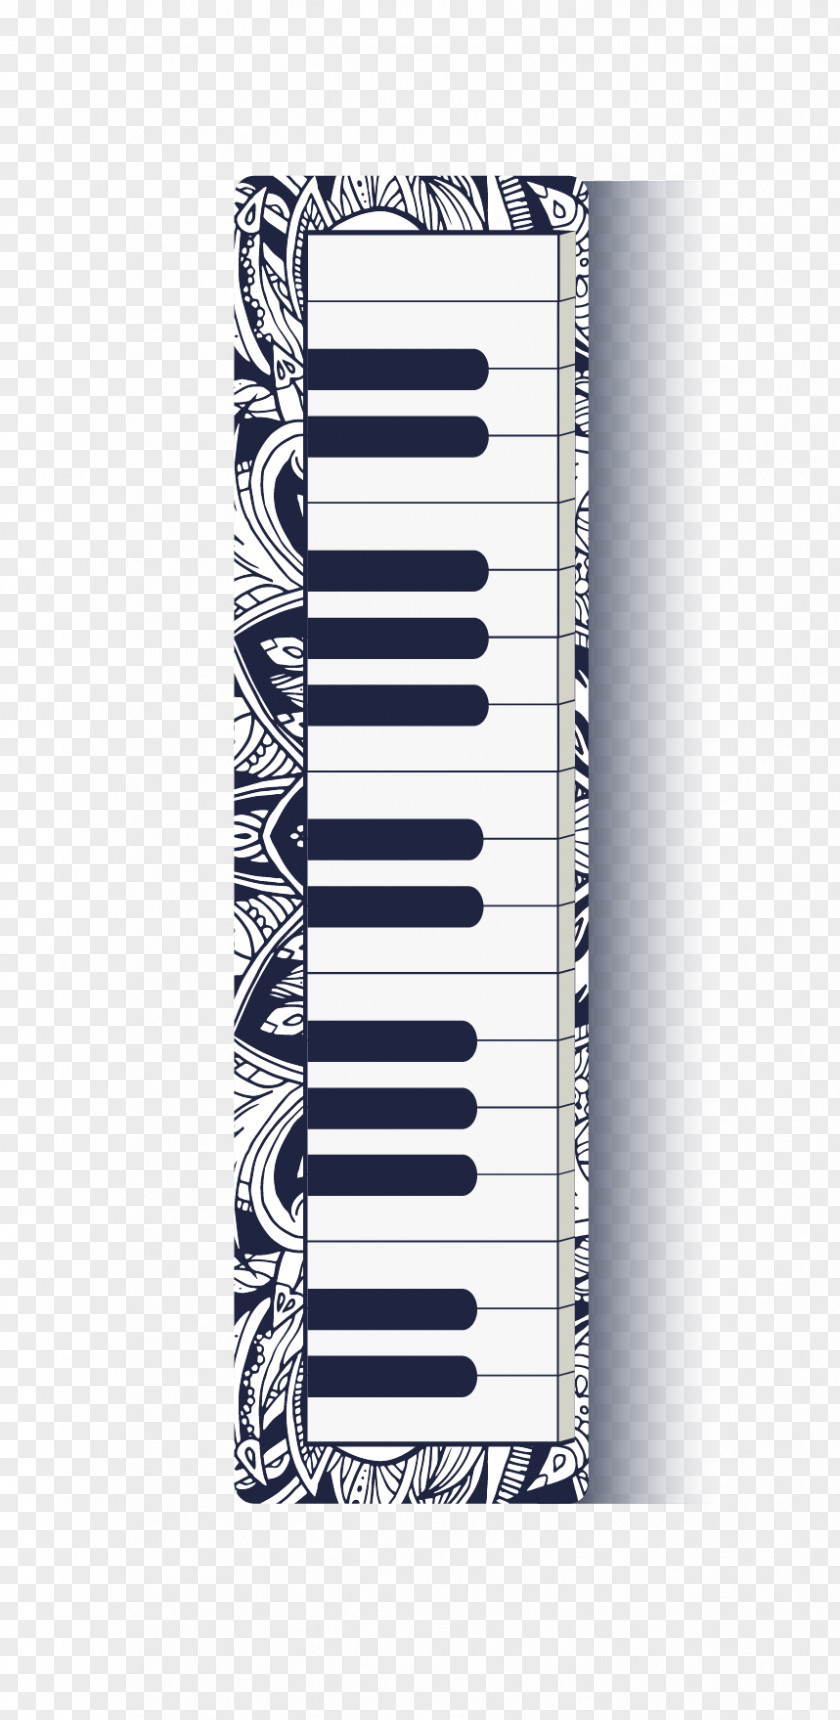 Creative Piano Keys Vector Material Musical Keyboard PNG